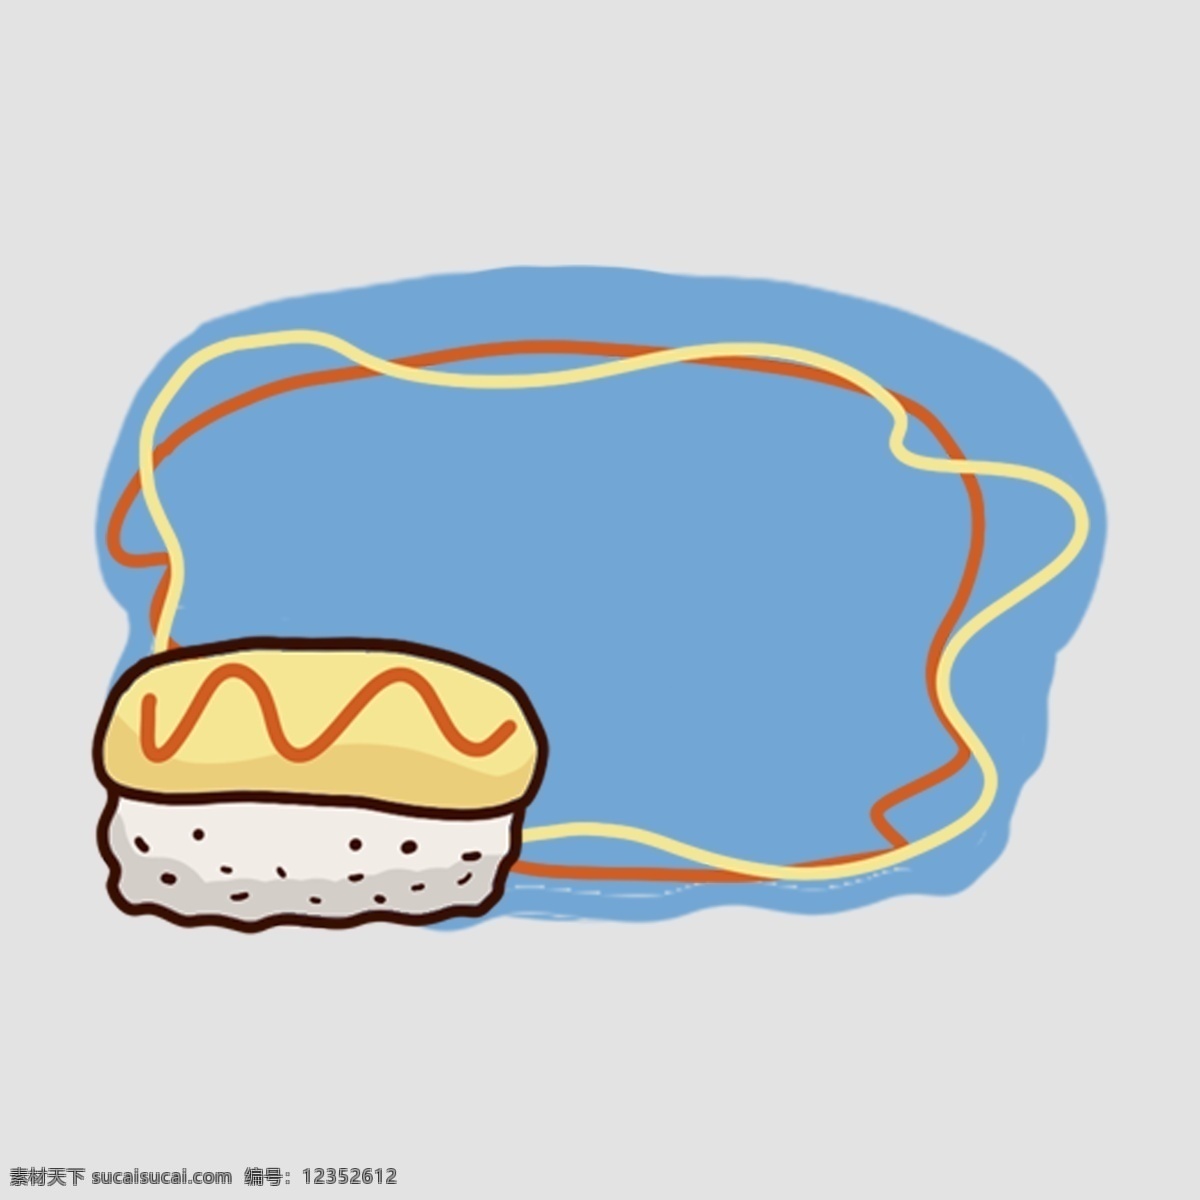 面包边框插画 蓝色 面包 边框